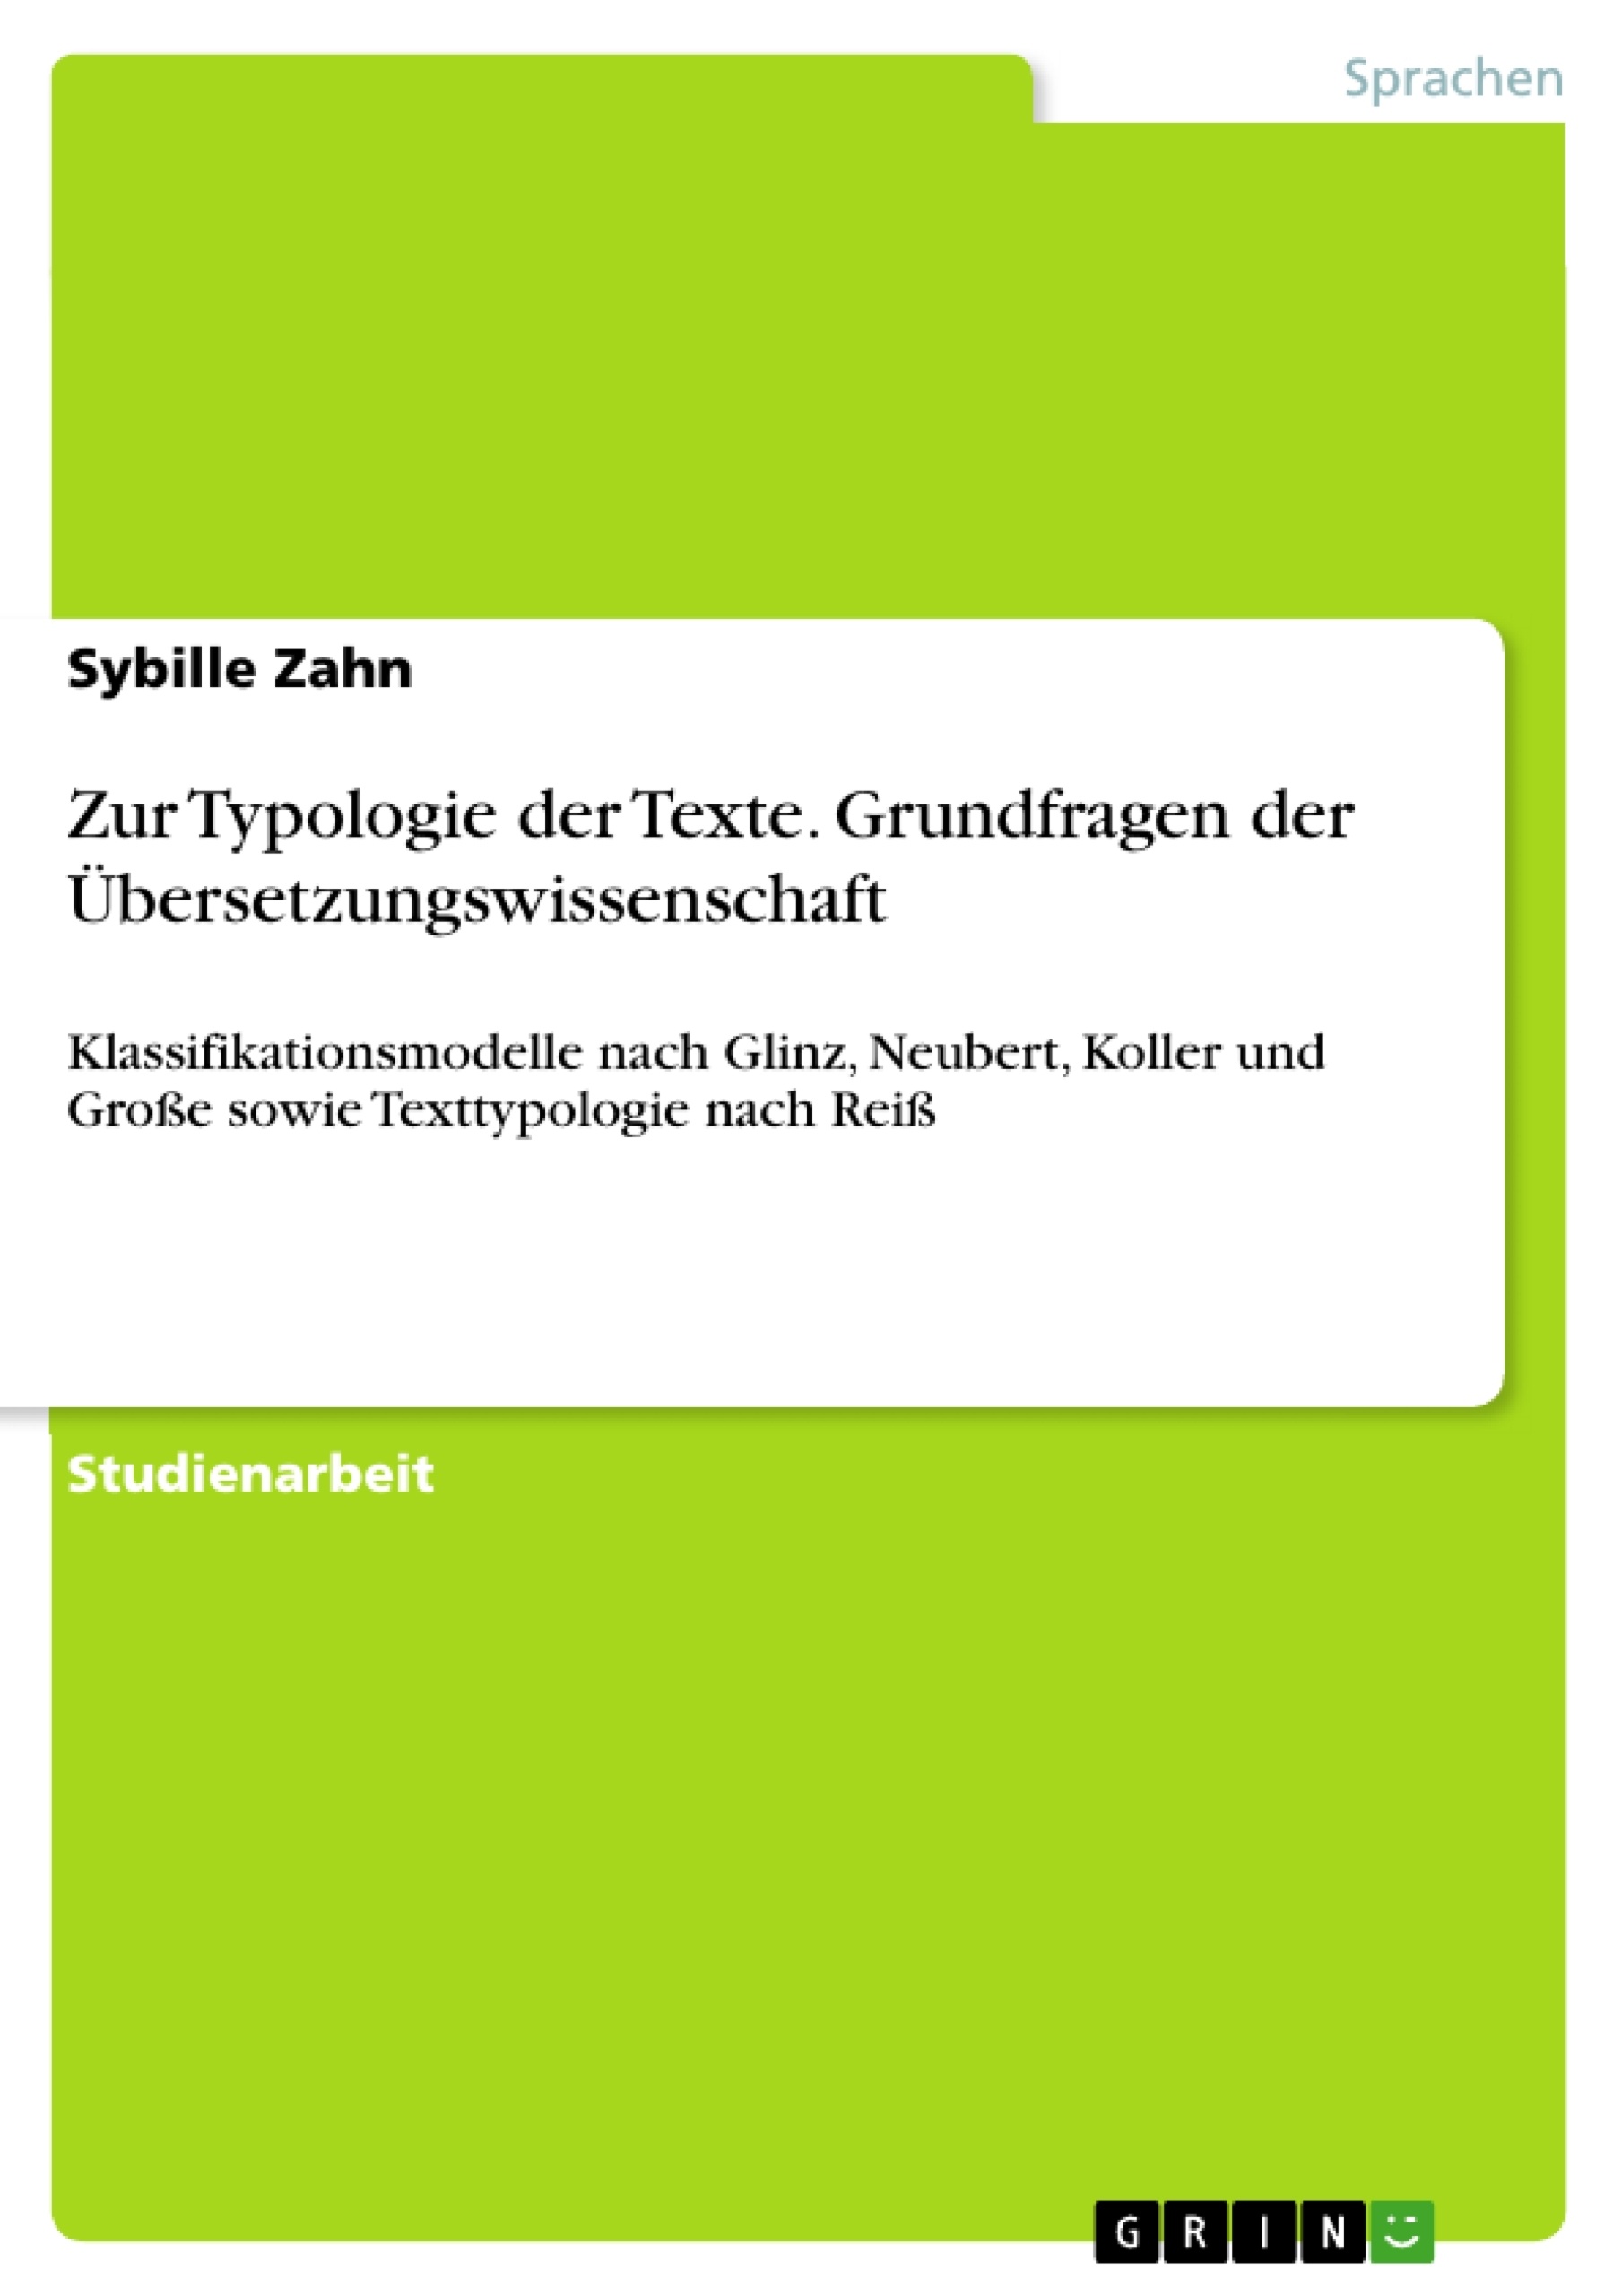 Título: Zur Typologie der Texte. Grundfragen der Übersetzungswissenschaft